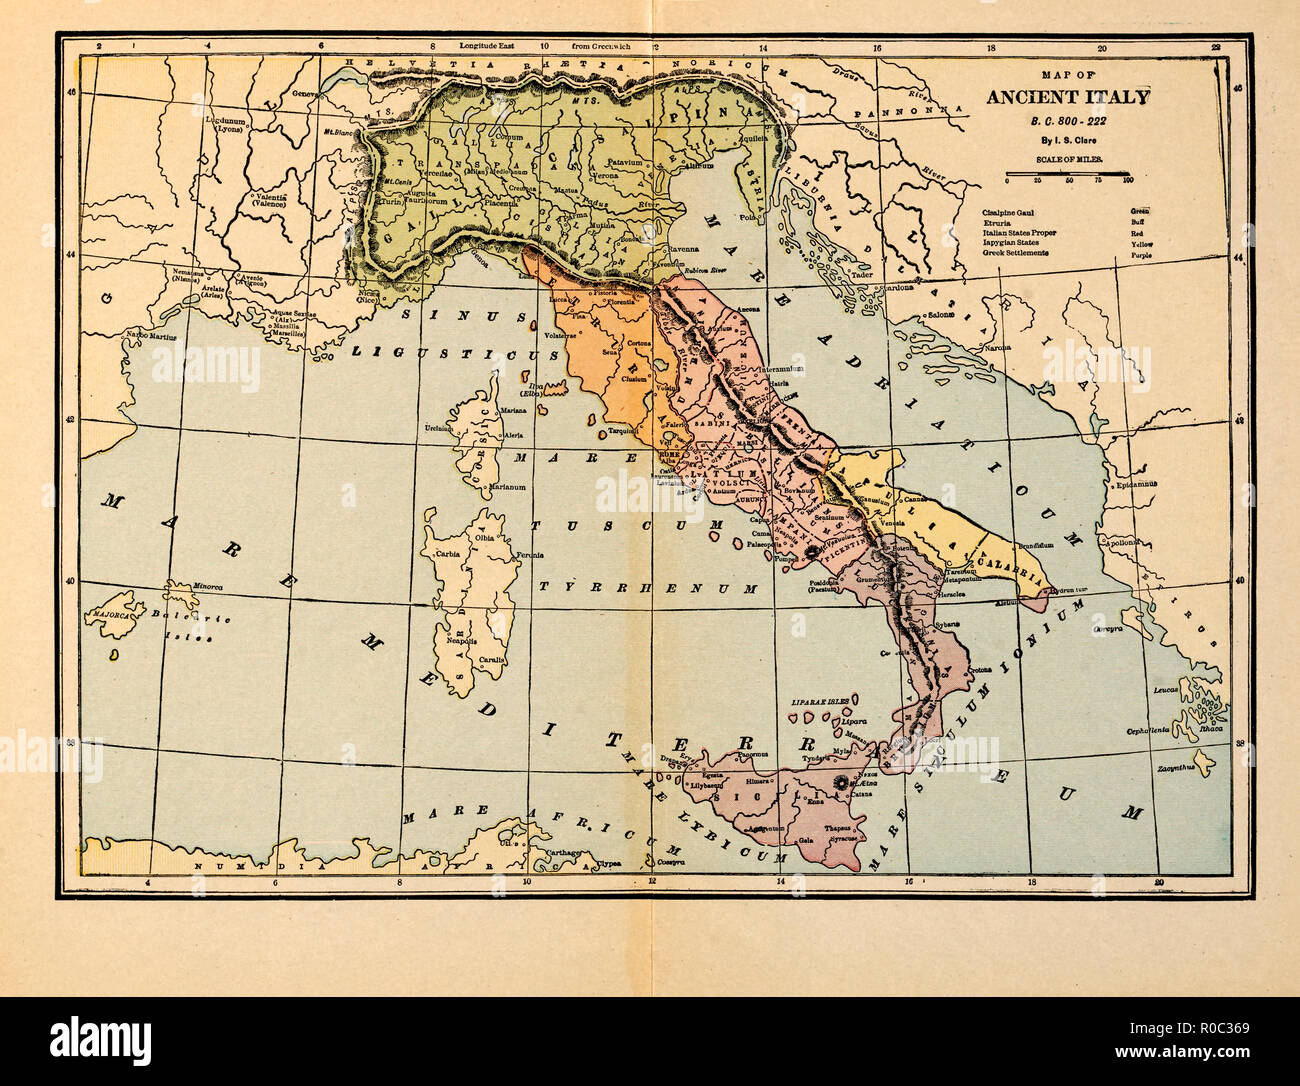 Karte des antiken Italien, v. Chr. 800-222 Stockfoto